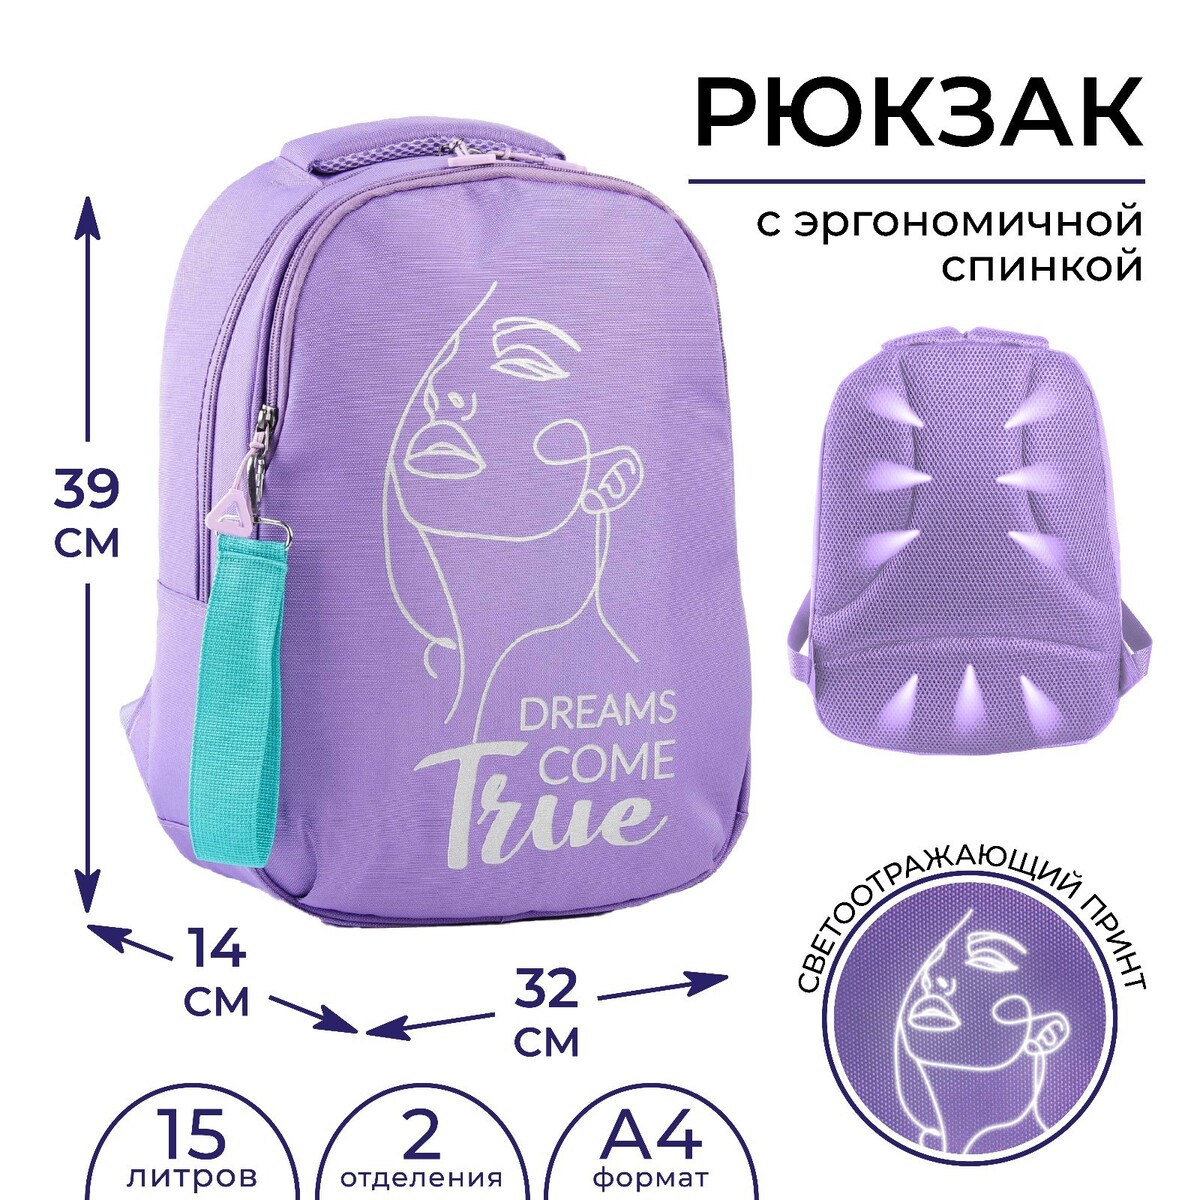 Рюкзак школьный art hype true, 39x32x14 см, ART hype